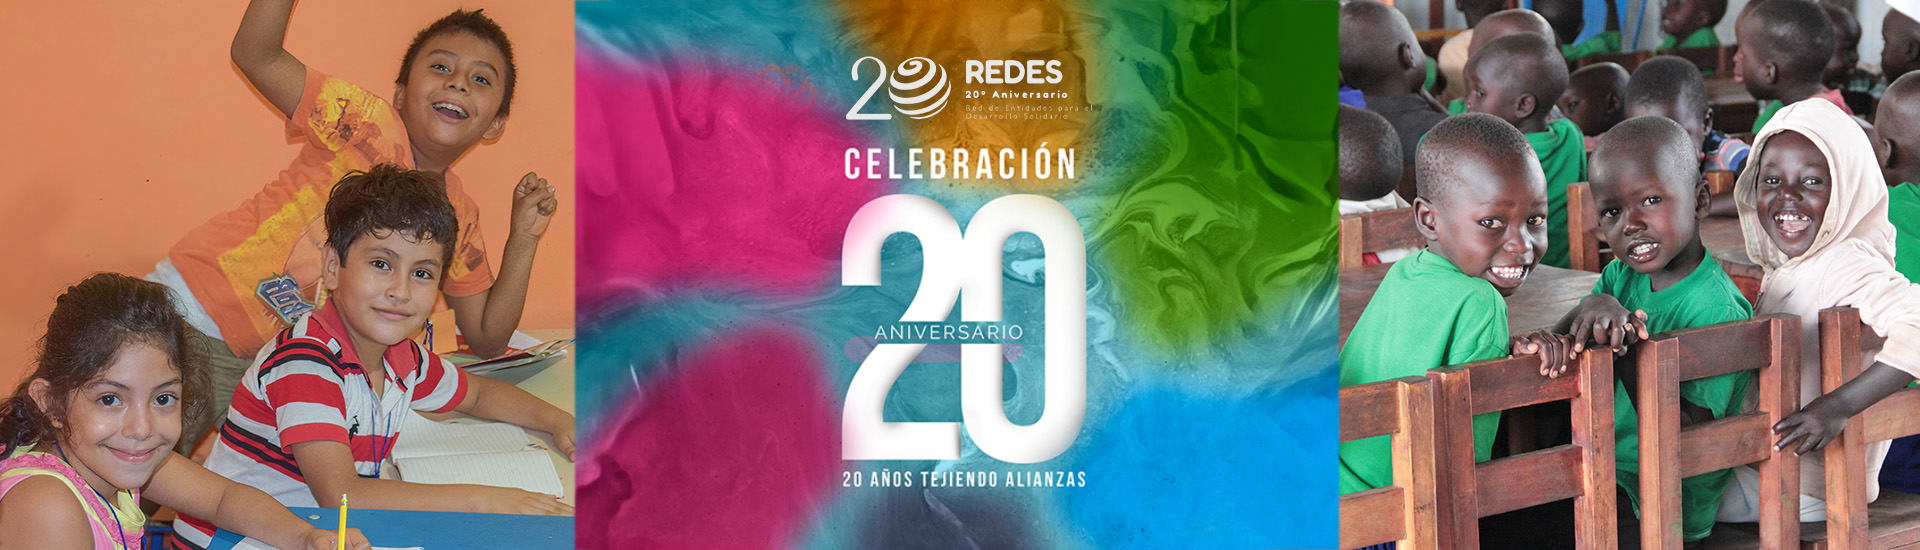 Celebramos el 20 Aniversario de REDES, luchando juntos contra la pobreza